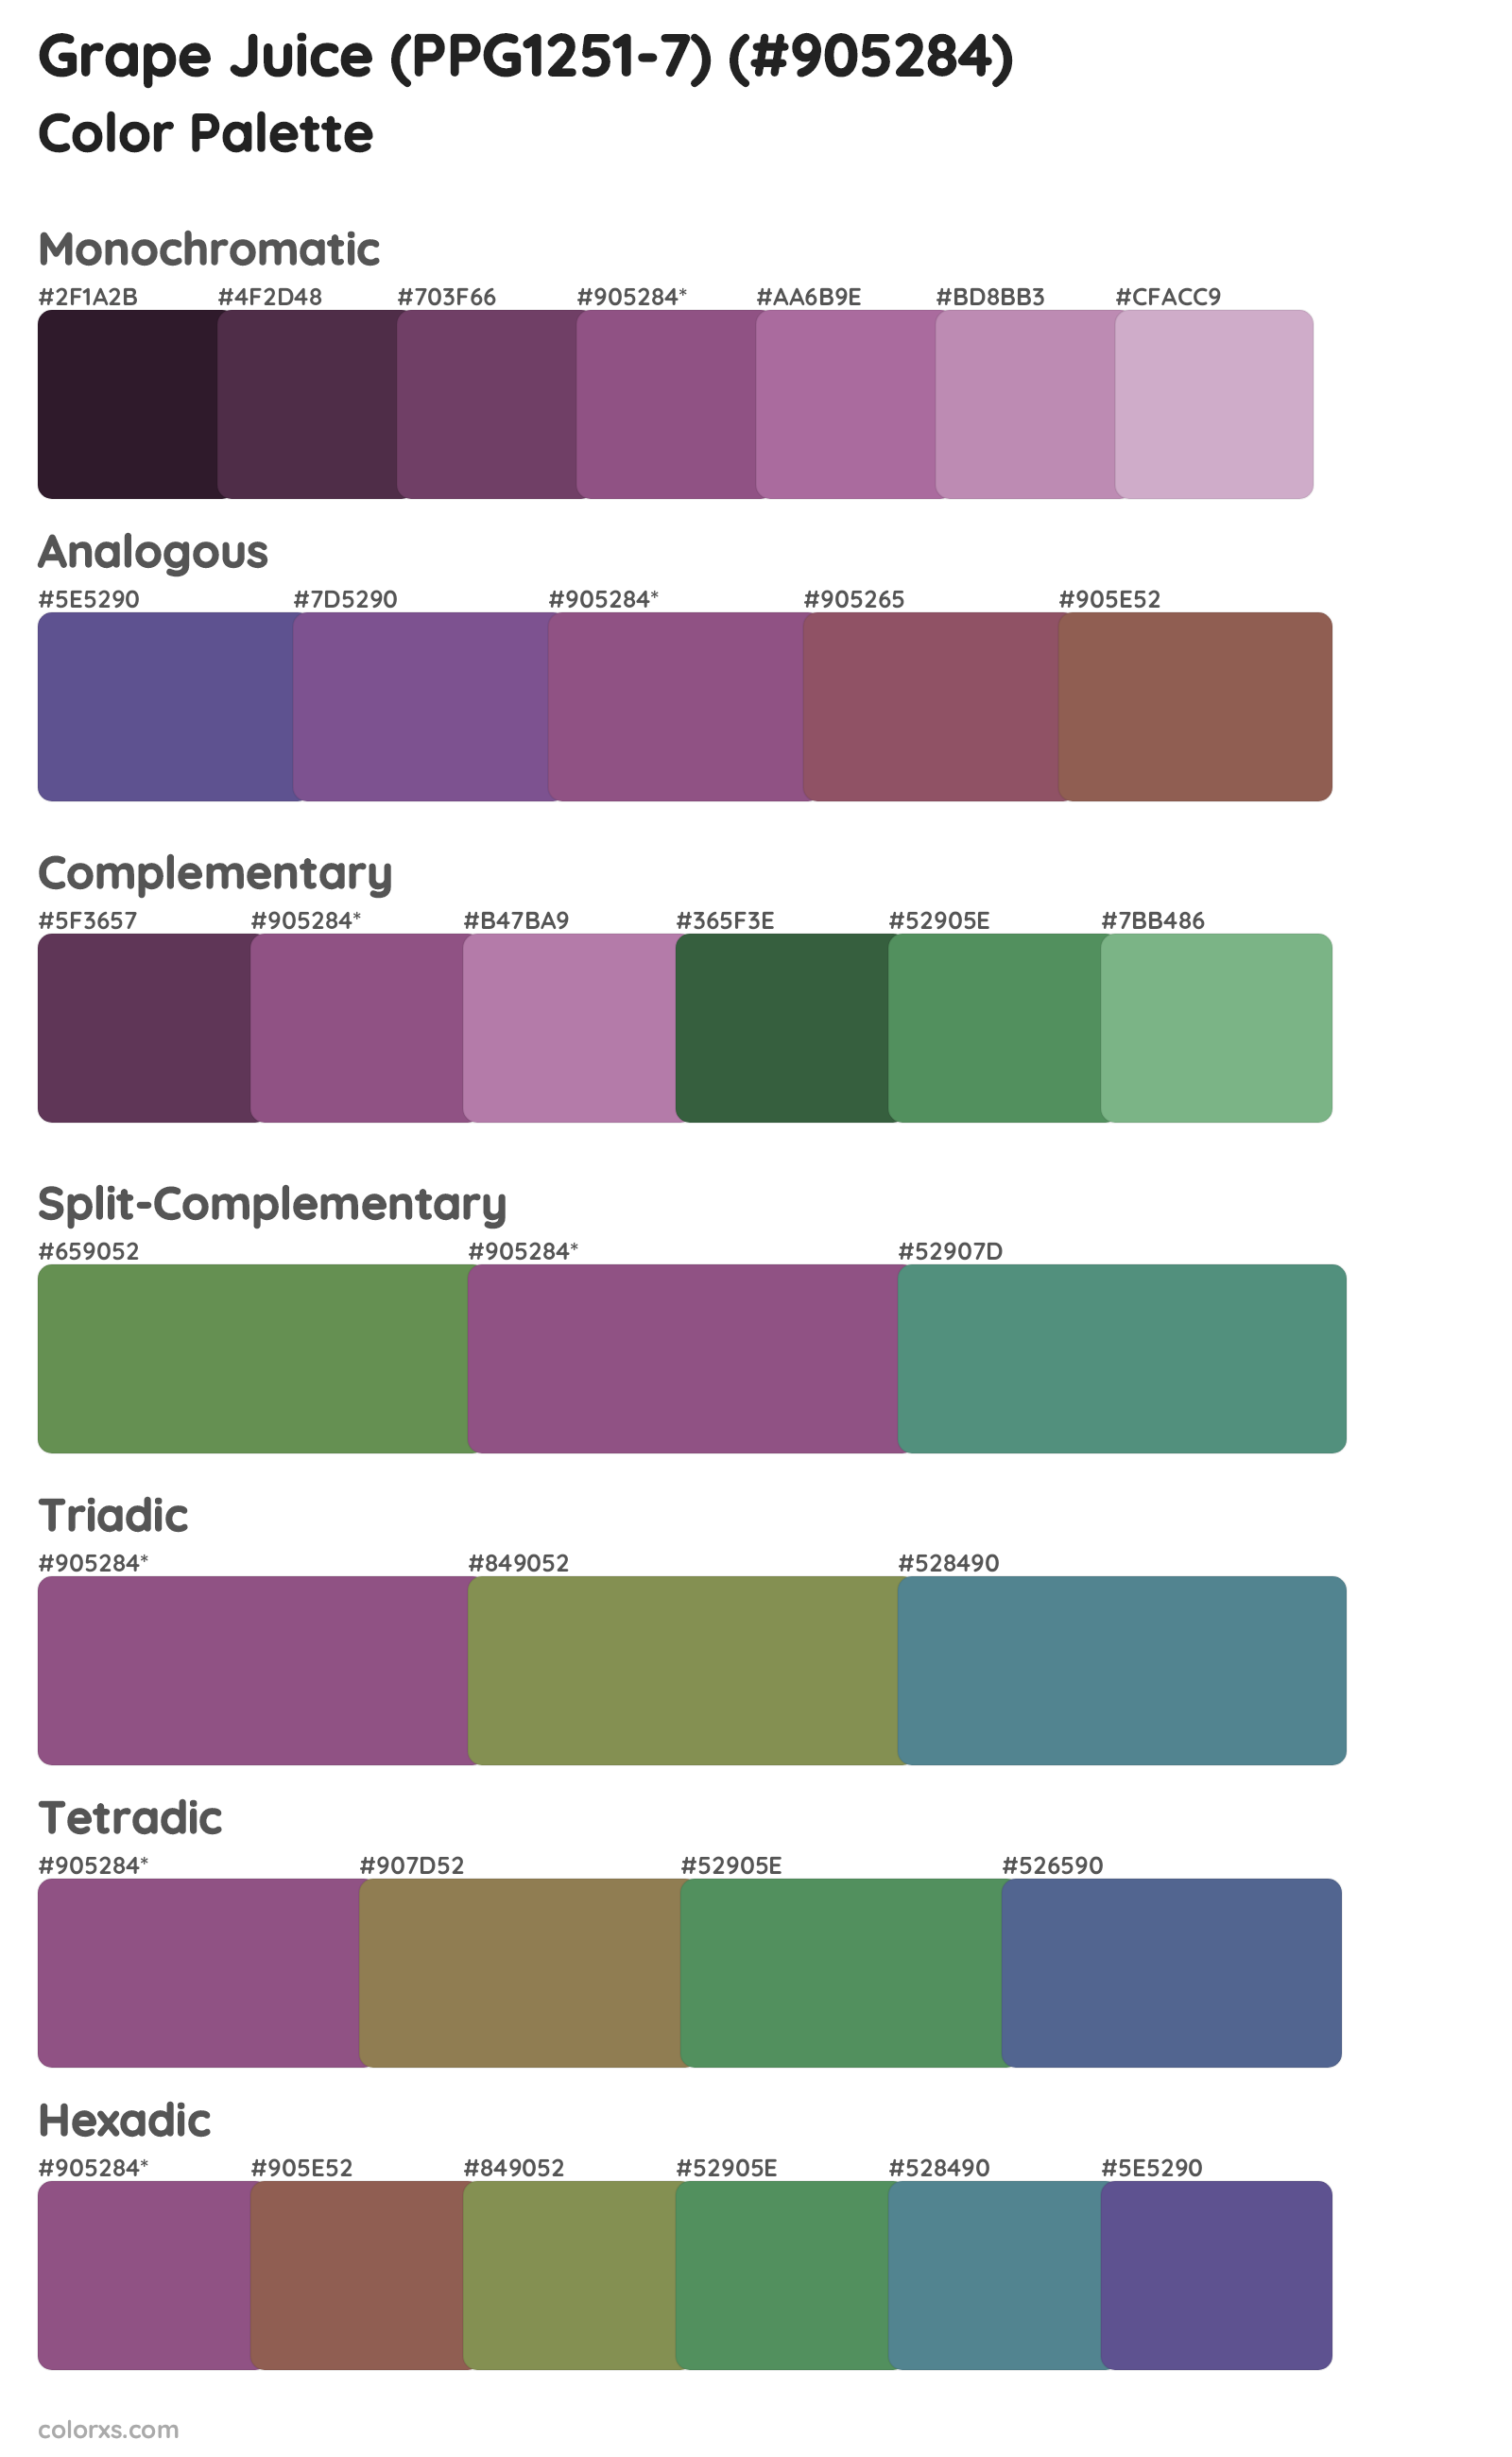 Grape Juice (PPG1251-7) Color Scheme Palettes